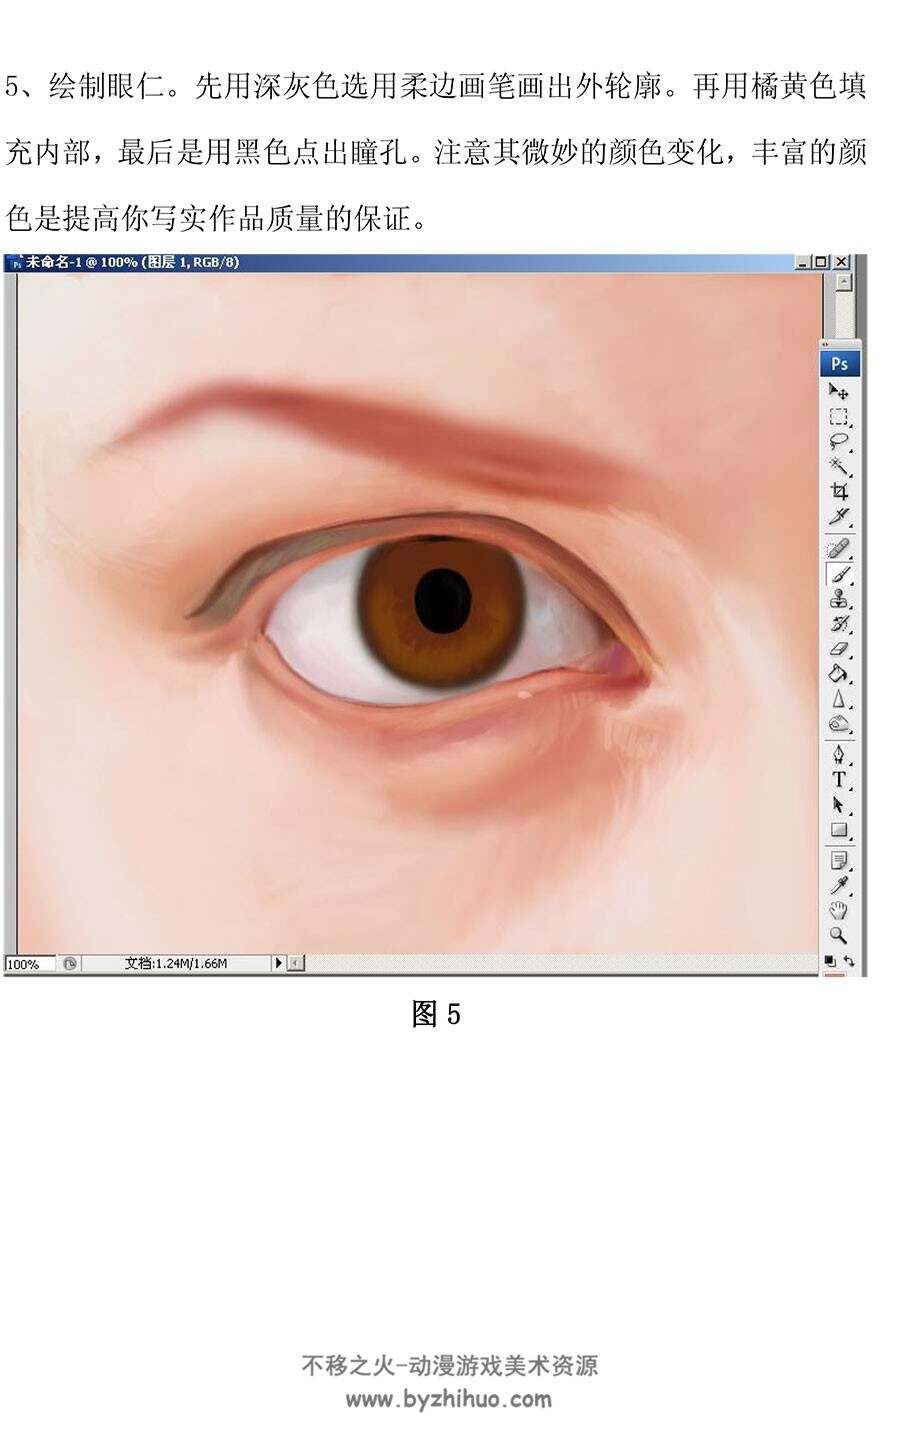 PS教程 眼睛画法 写实风人类眼睛板绘绘制教学 百度网盘下载